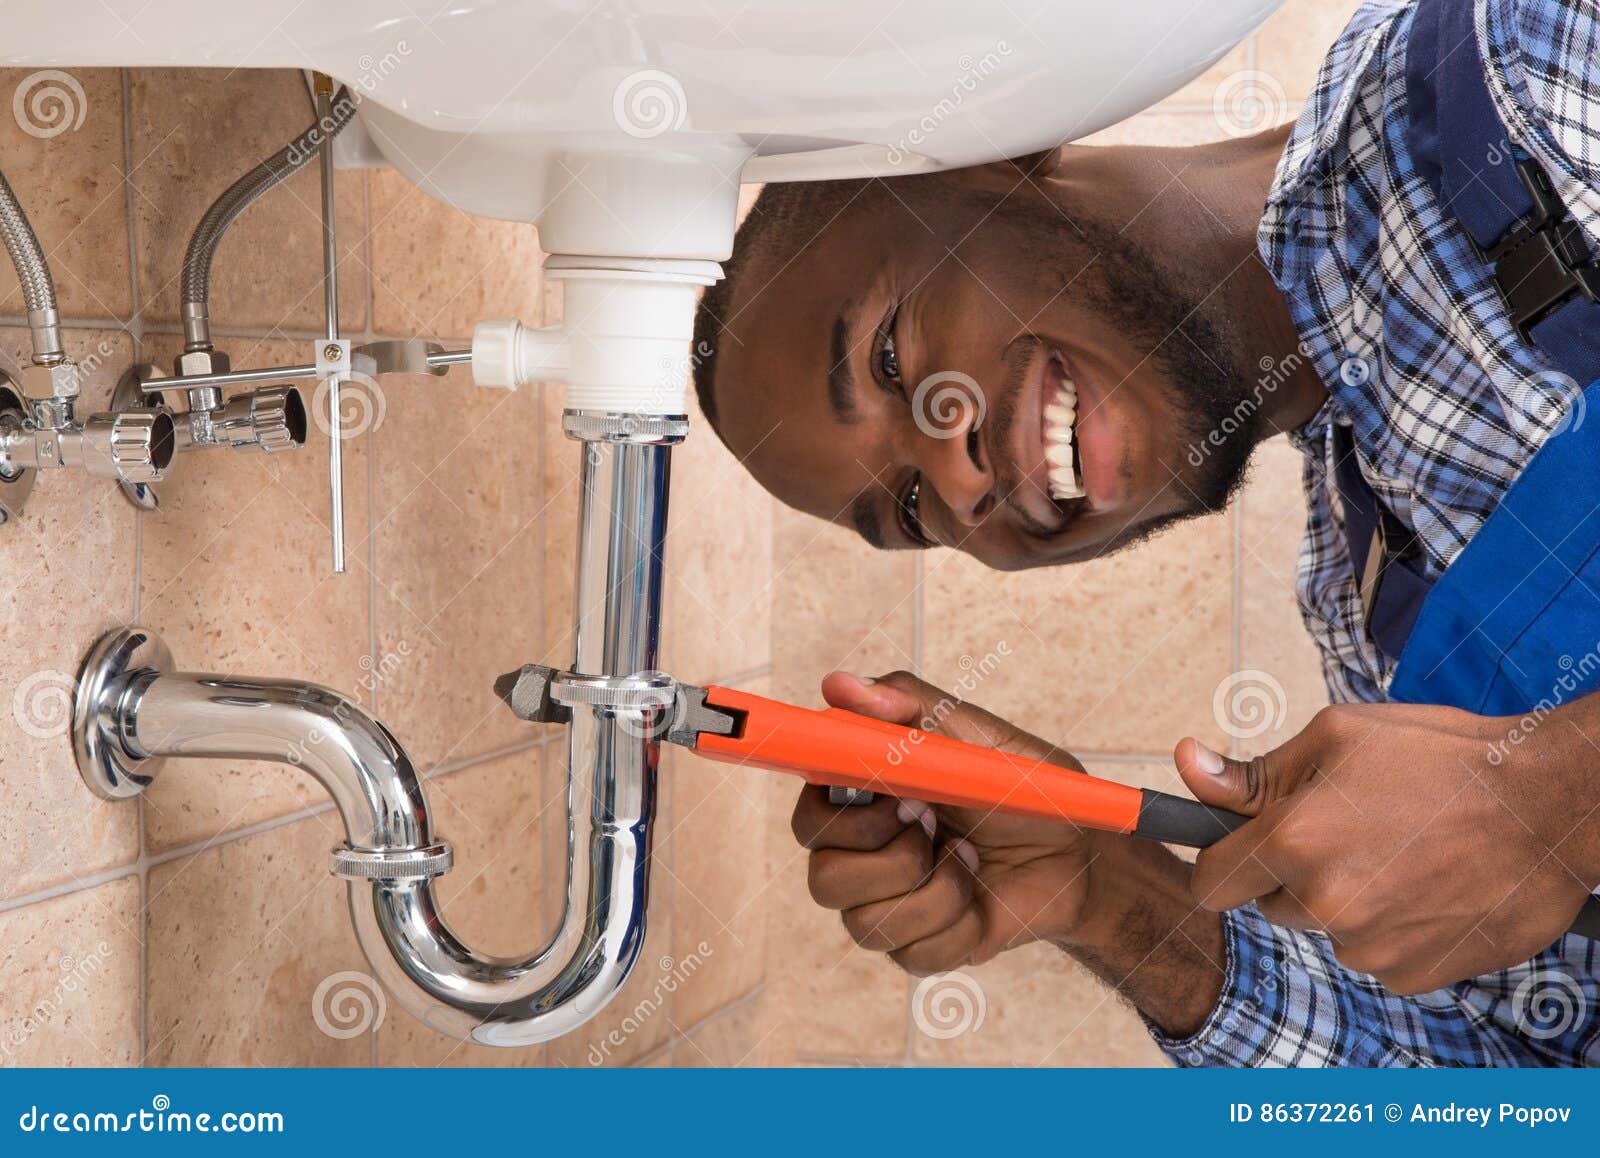 happy male plumber repairing sink in bathroom